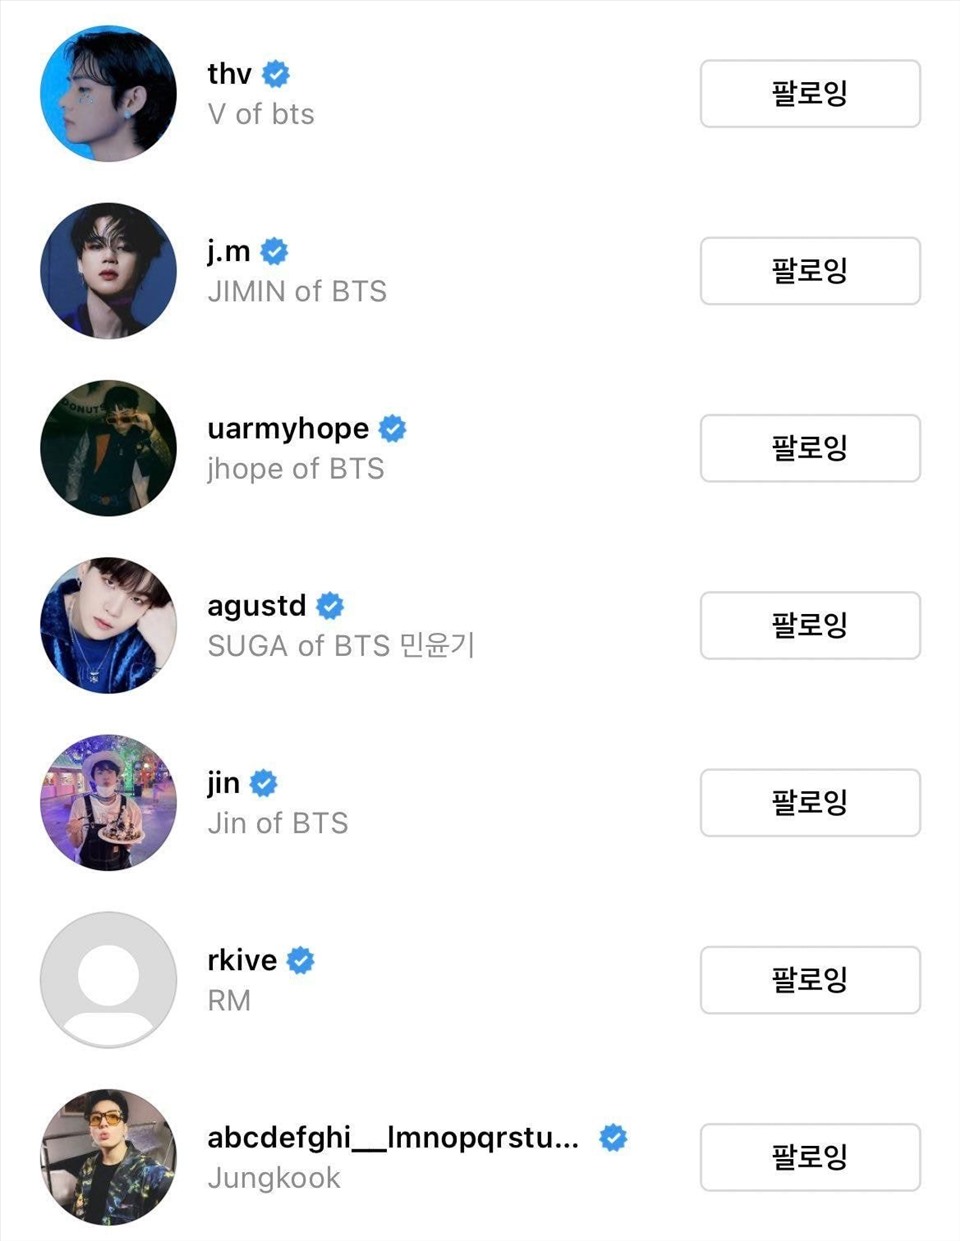 7 thành viên của nhóm BTS khiến fan hâm mộ phấn khích khi lập tài khoản riêng trên trang Instagram. Ảnh: Xinhua